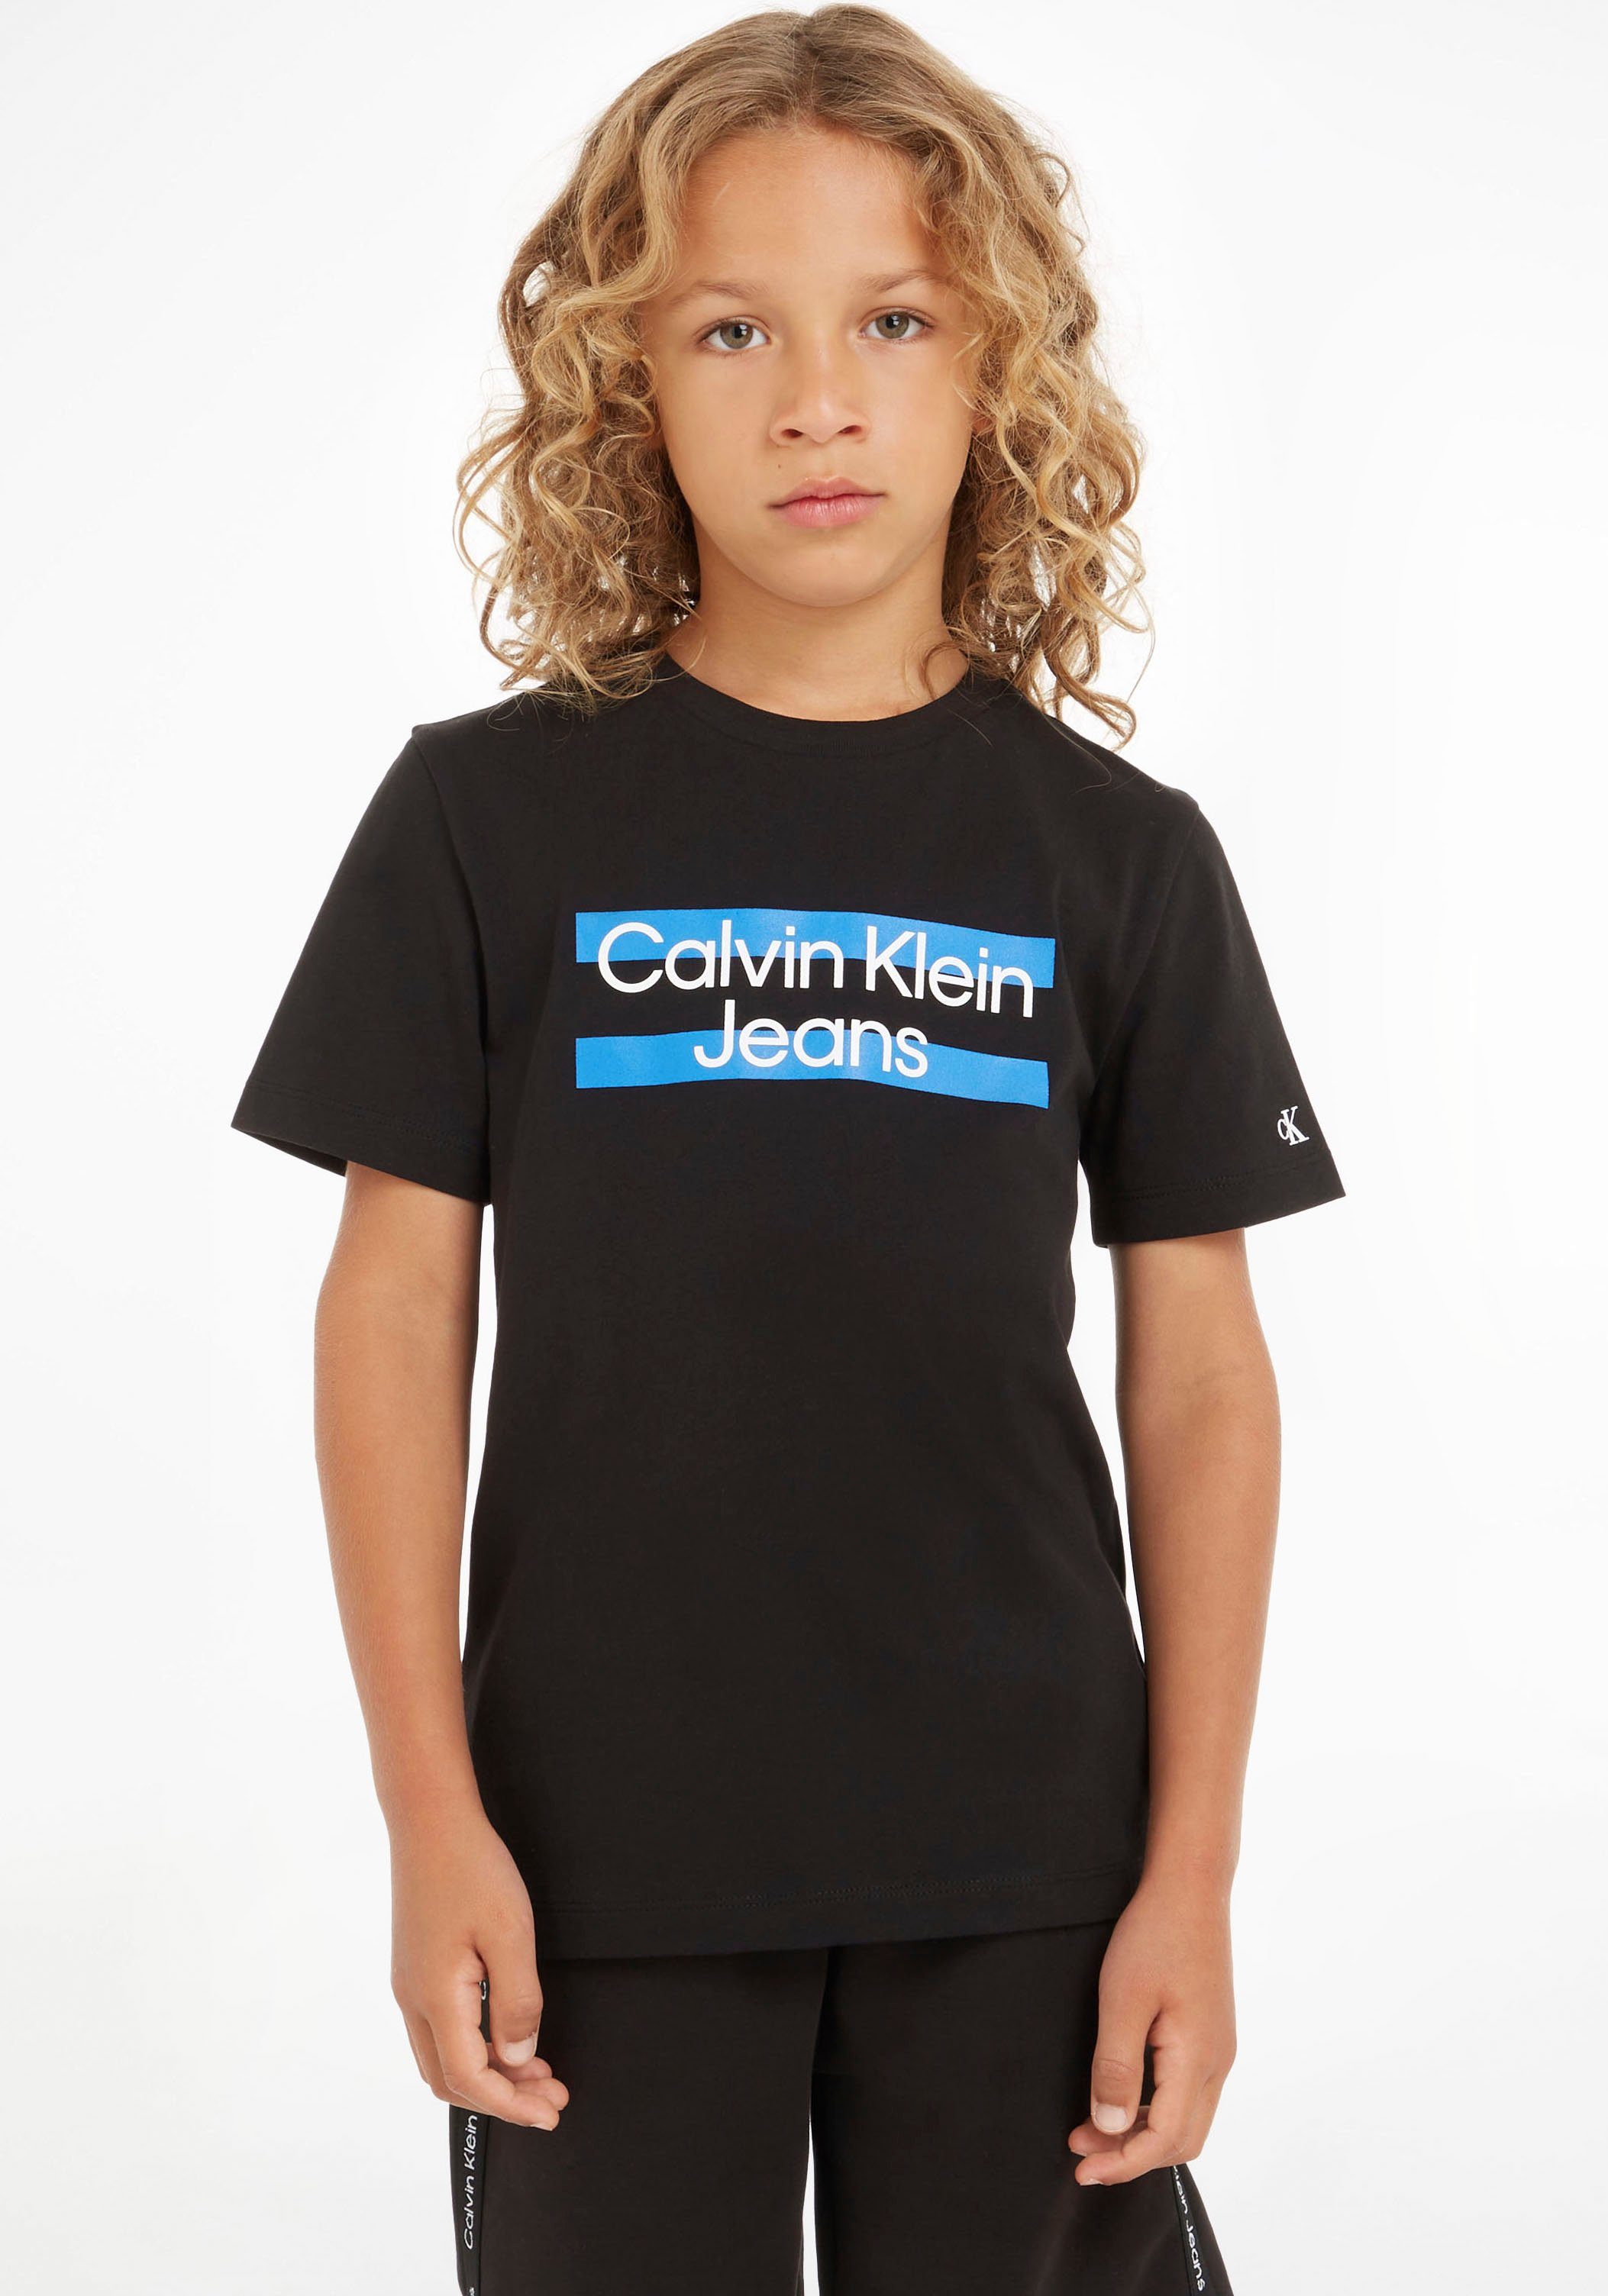 Calvin Klein Jeans T-Shirt mit Calvin Klein Logodruck auf der Brust schwarz